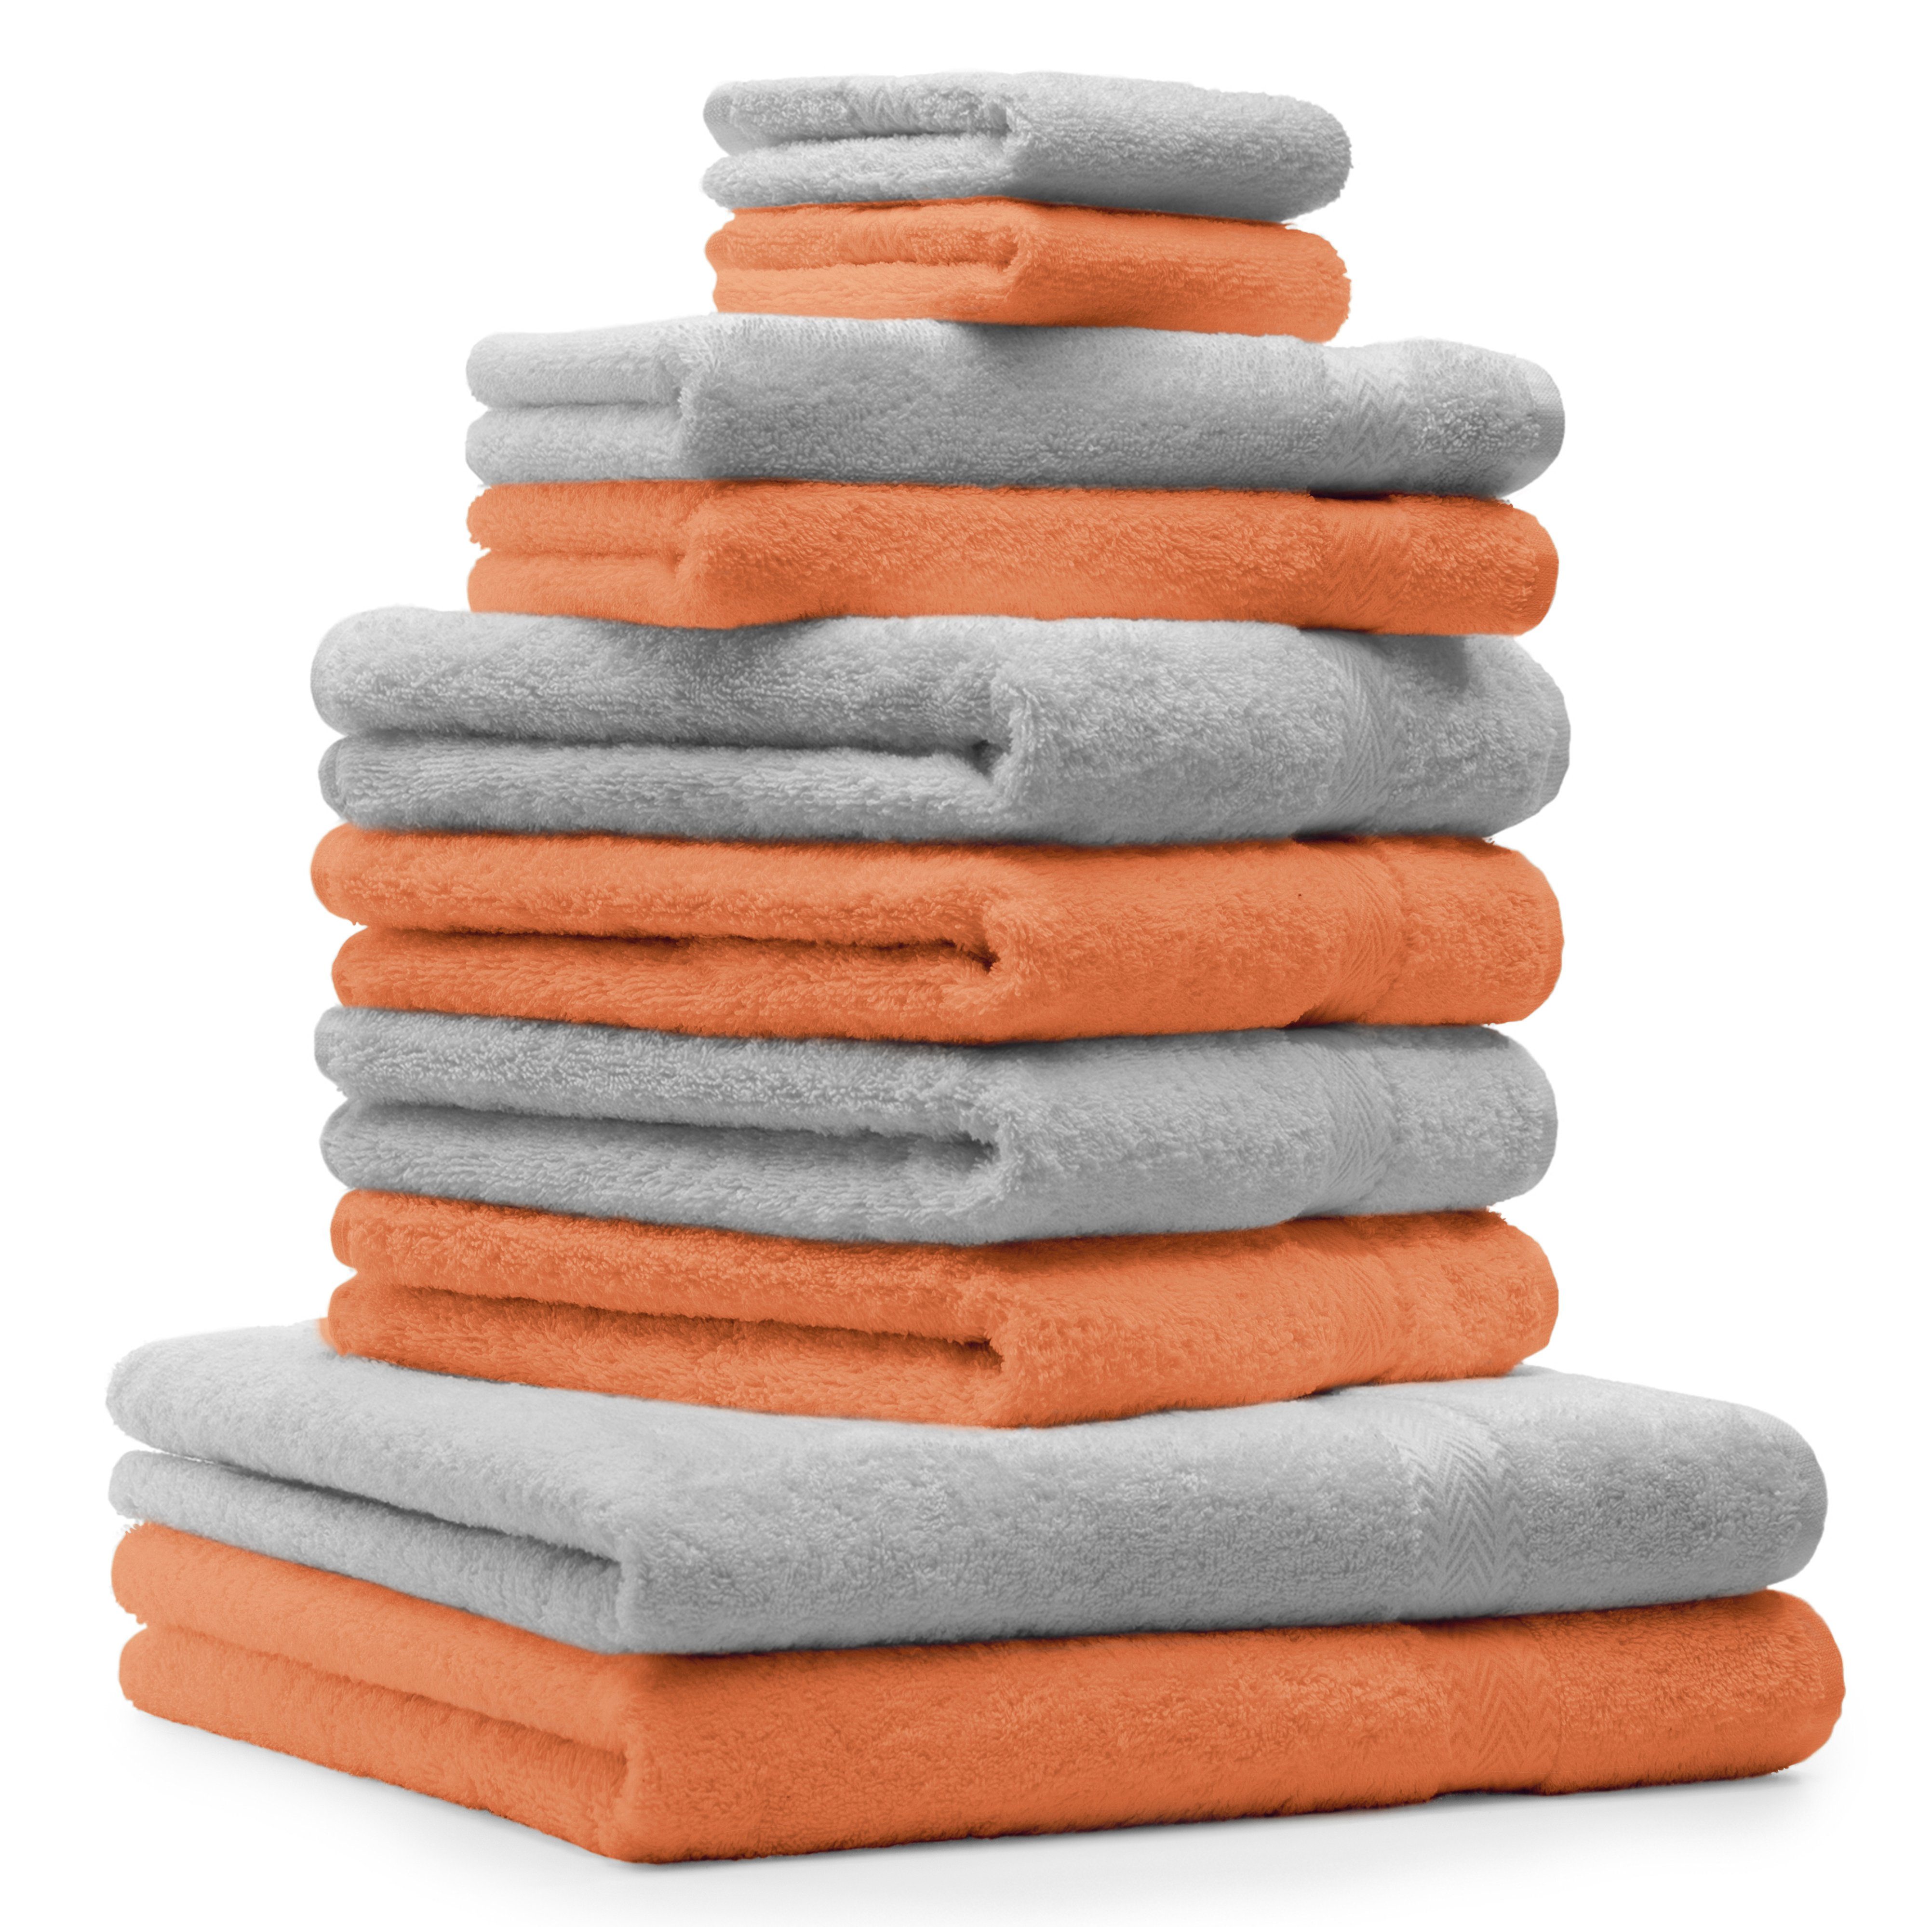 Betz Handtuch Set 10-TLG. Handtuch-Set Classic Farbe orange und silbergrau, 100% Baumwolle